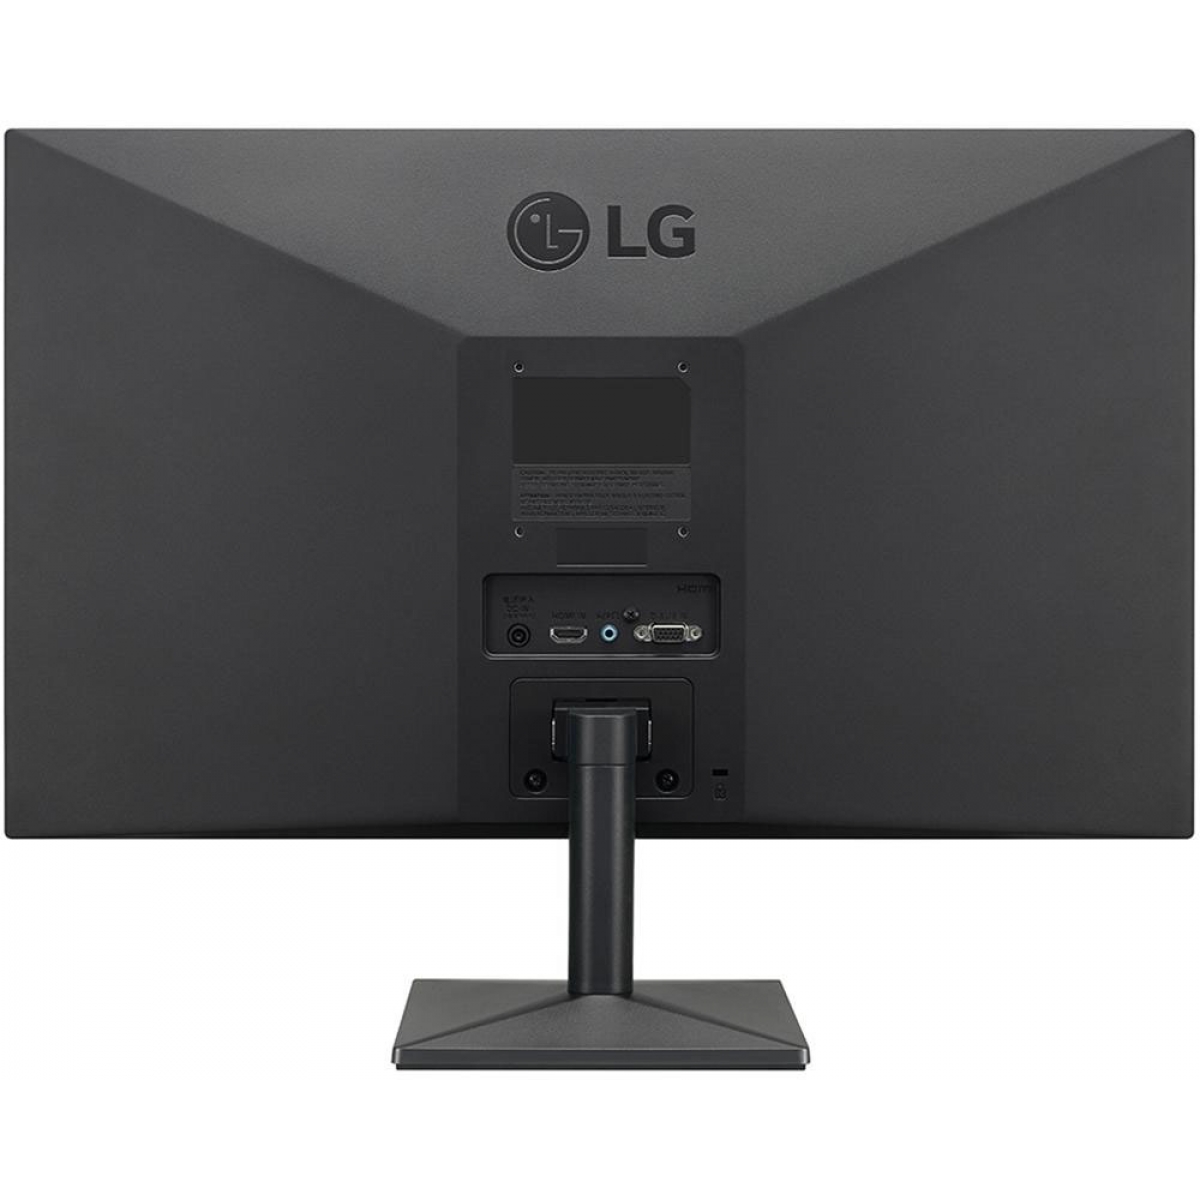 Monitor Gamer LG 23 Pol, Full HD, AMD FreeSync, HDMI, 24MK430H-B